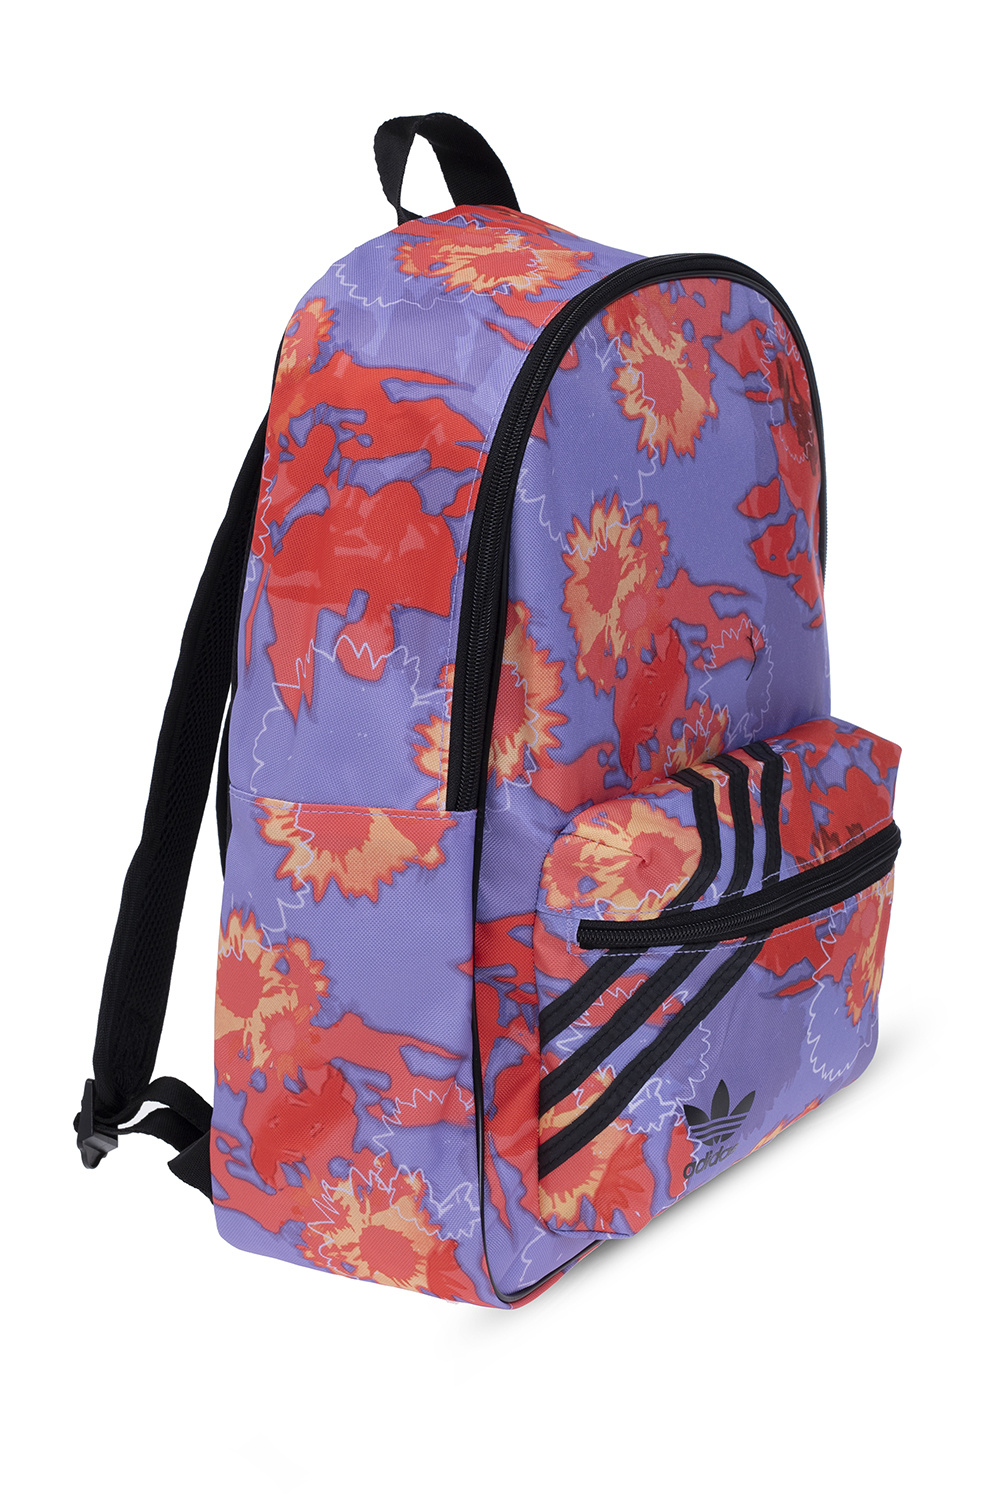 ADIDAS Originals Patterned backpack